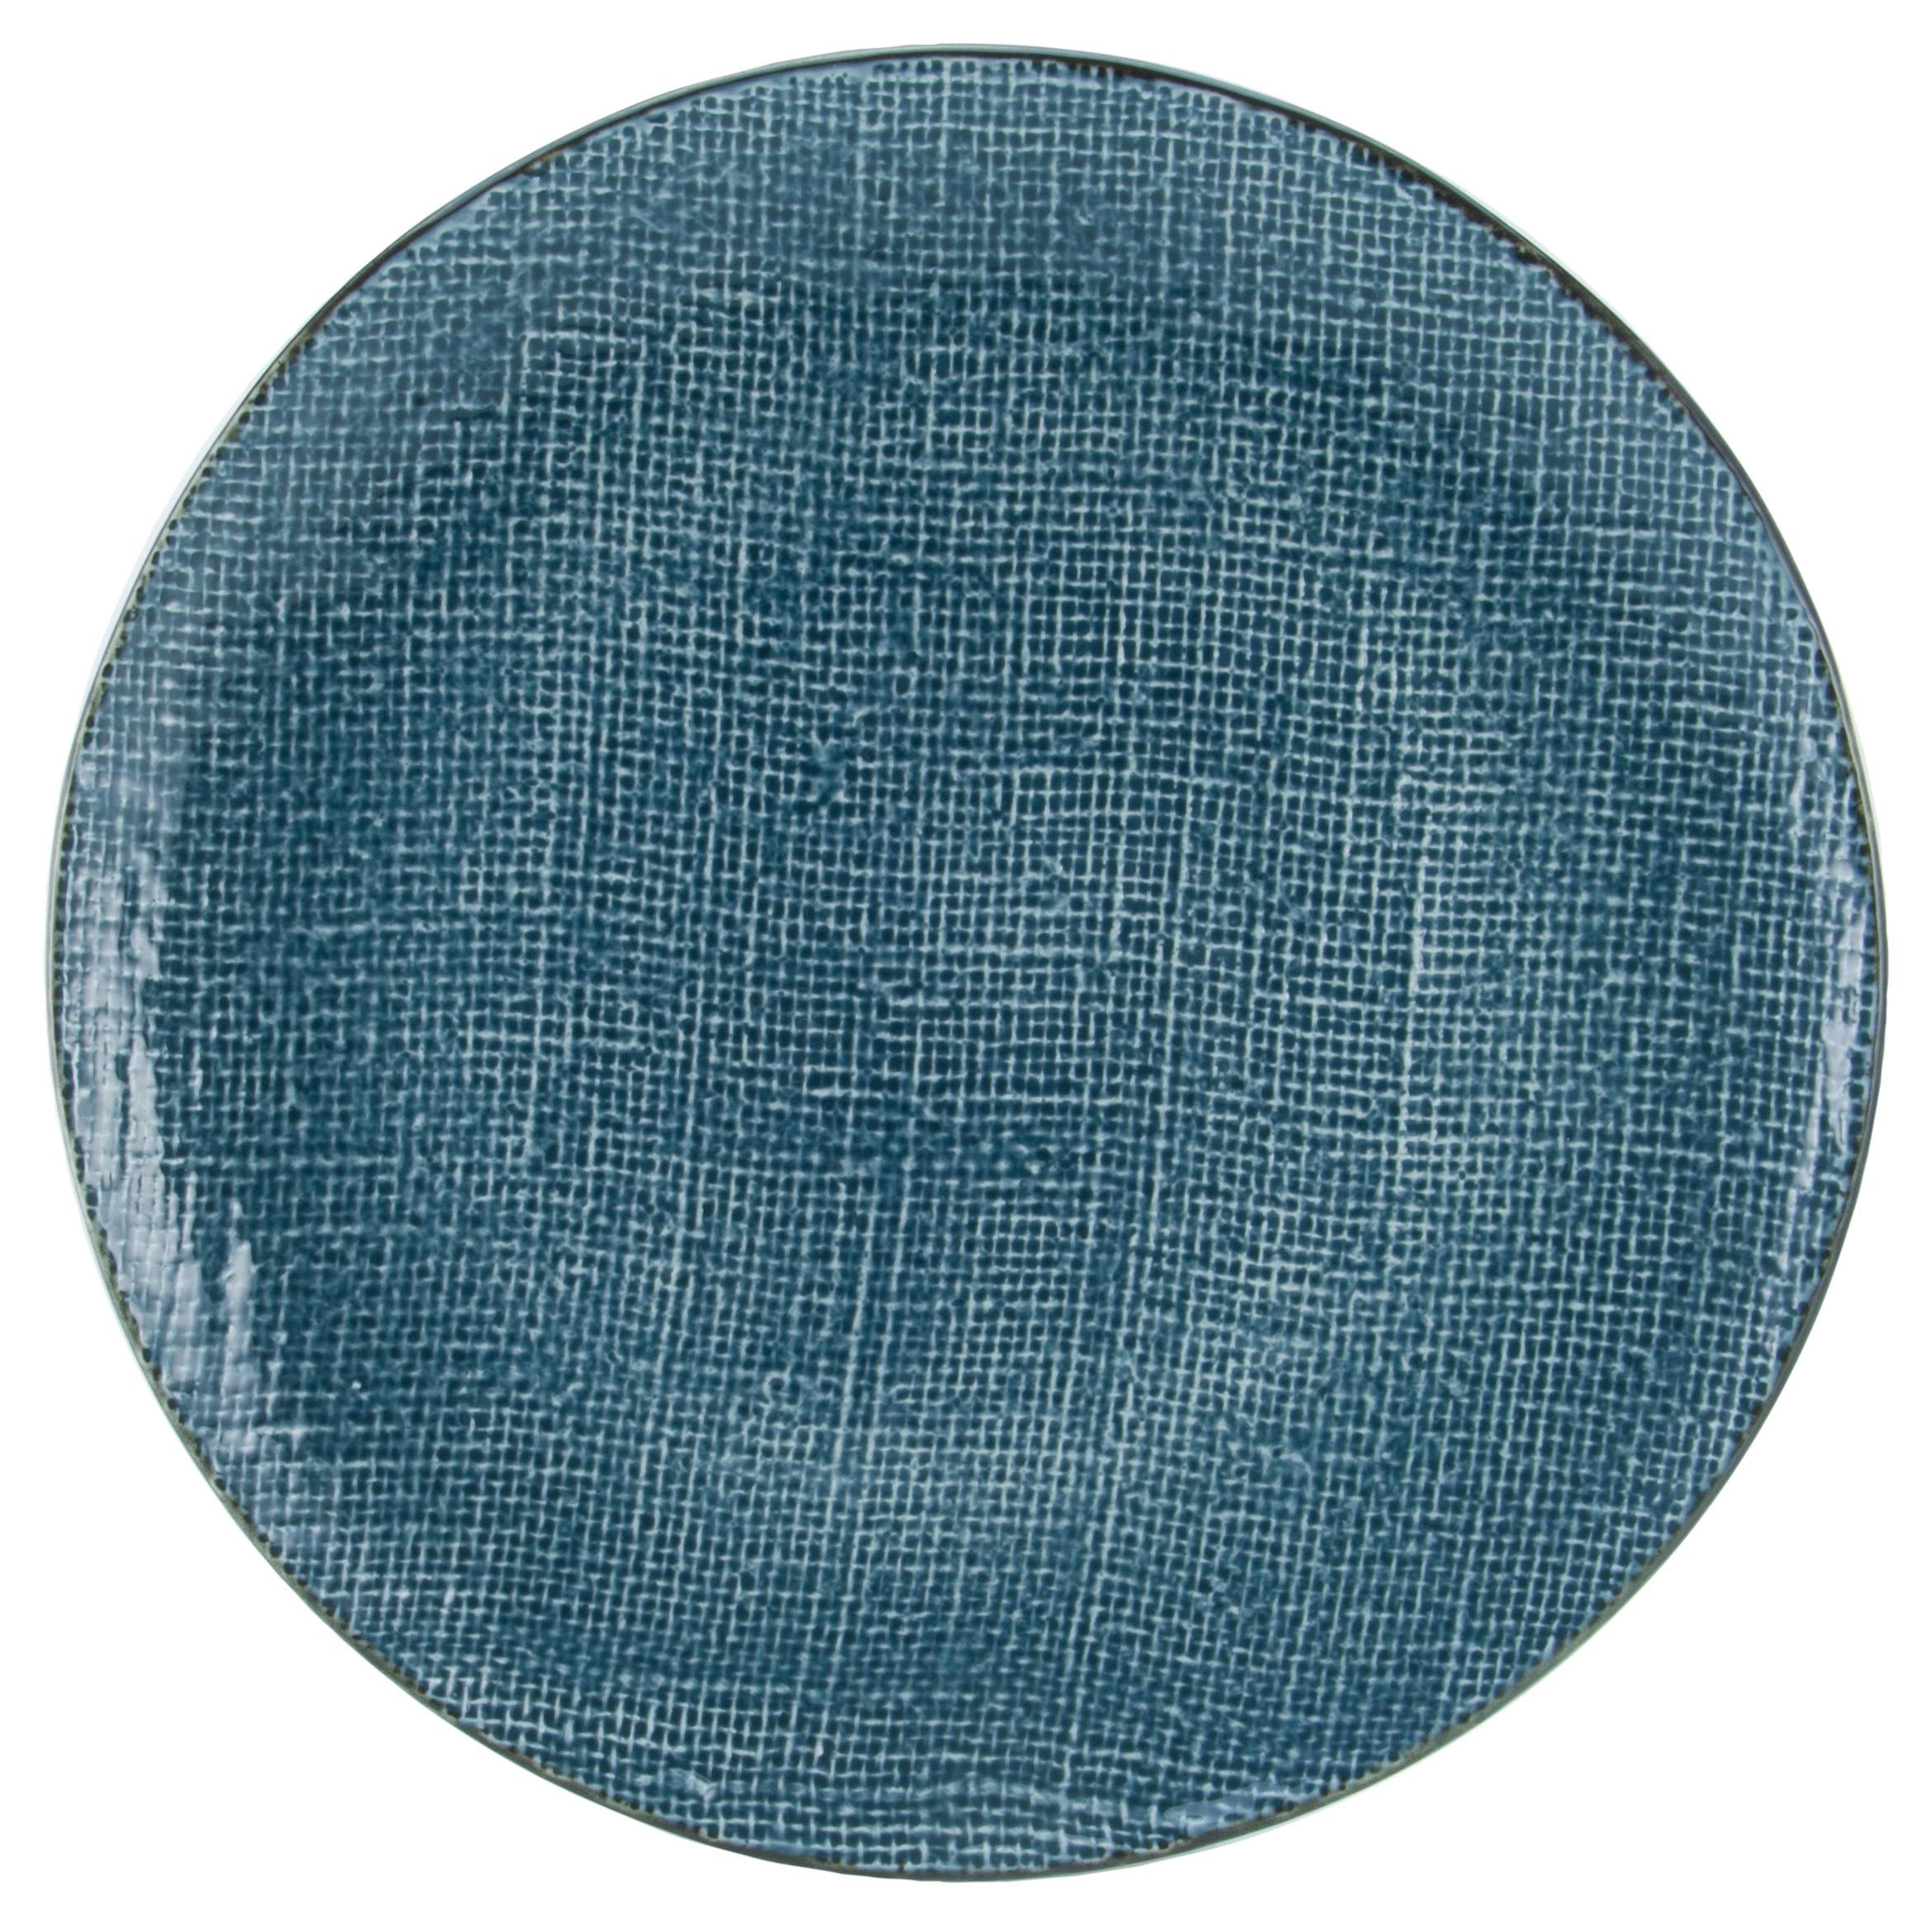 Talíř Jídelní Canvas, Ø: 28cm, Modrá - modrá, keramika (28/28/3cm) - Premium Living